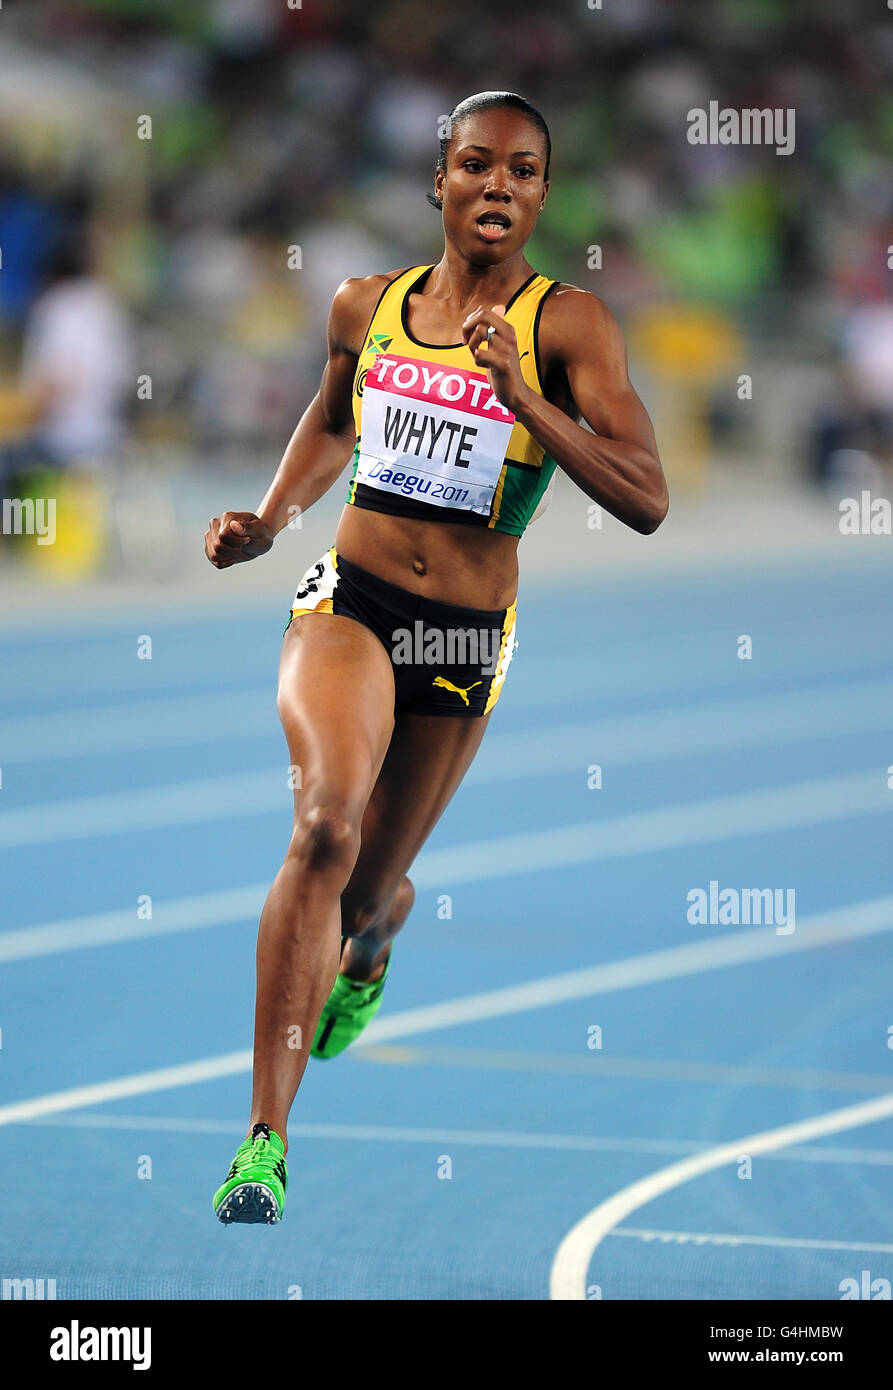 Atletica - Campionati del mondo IAAF 2011 - giorno due - Daegu. Rosemarie Whyte della Giamaica compete nei 400 metri Foto Stock